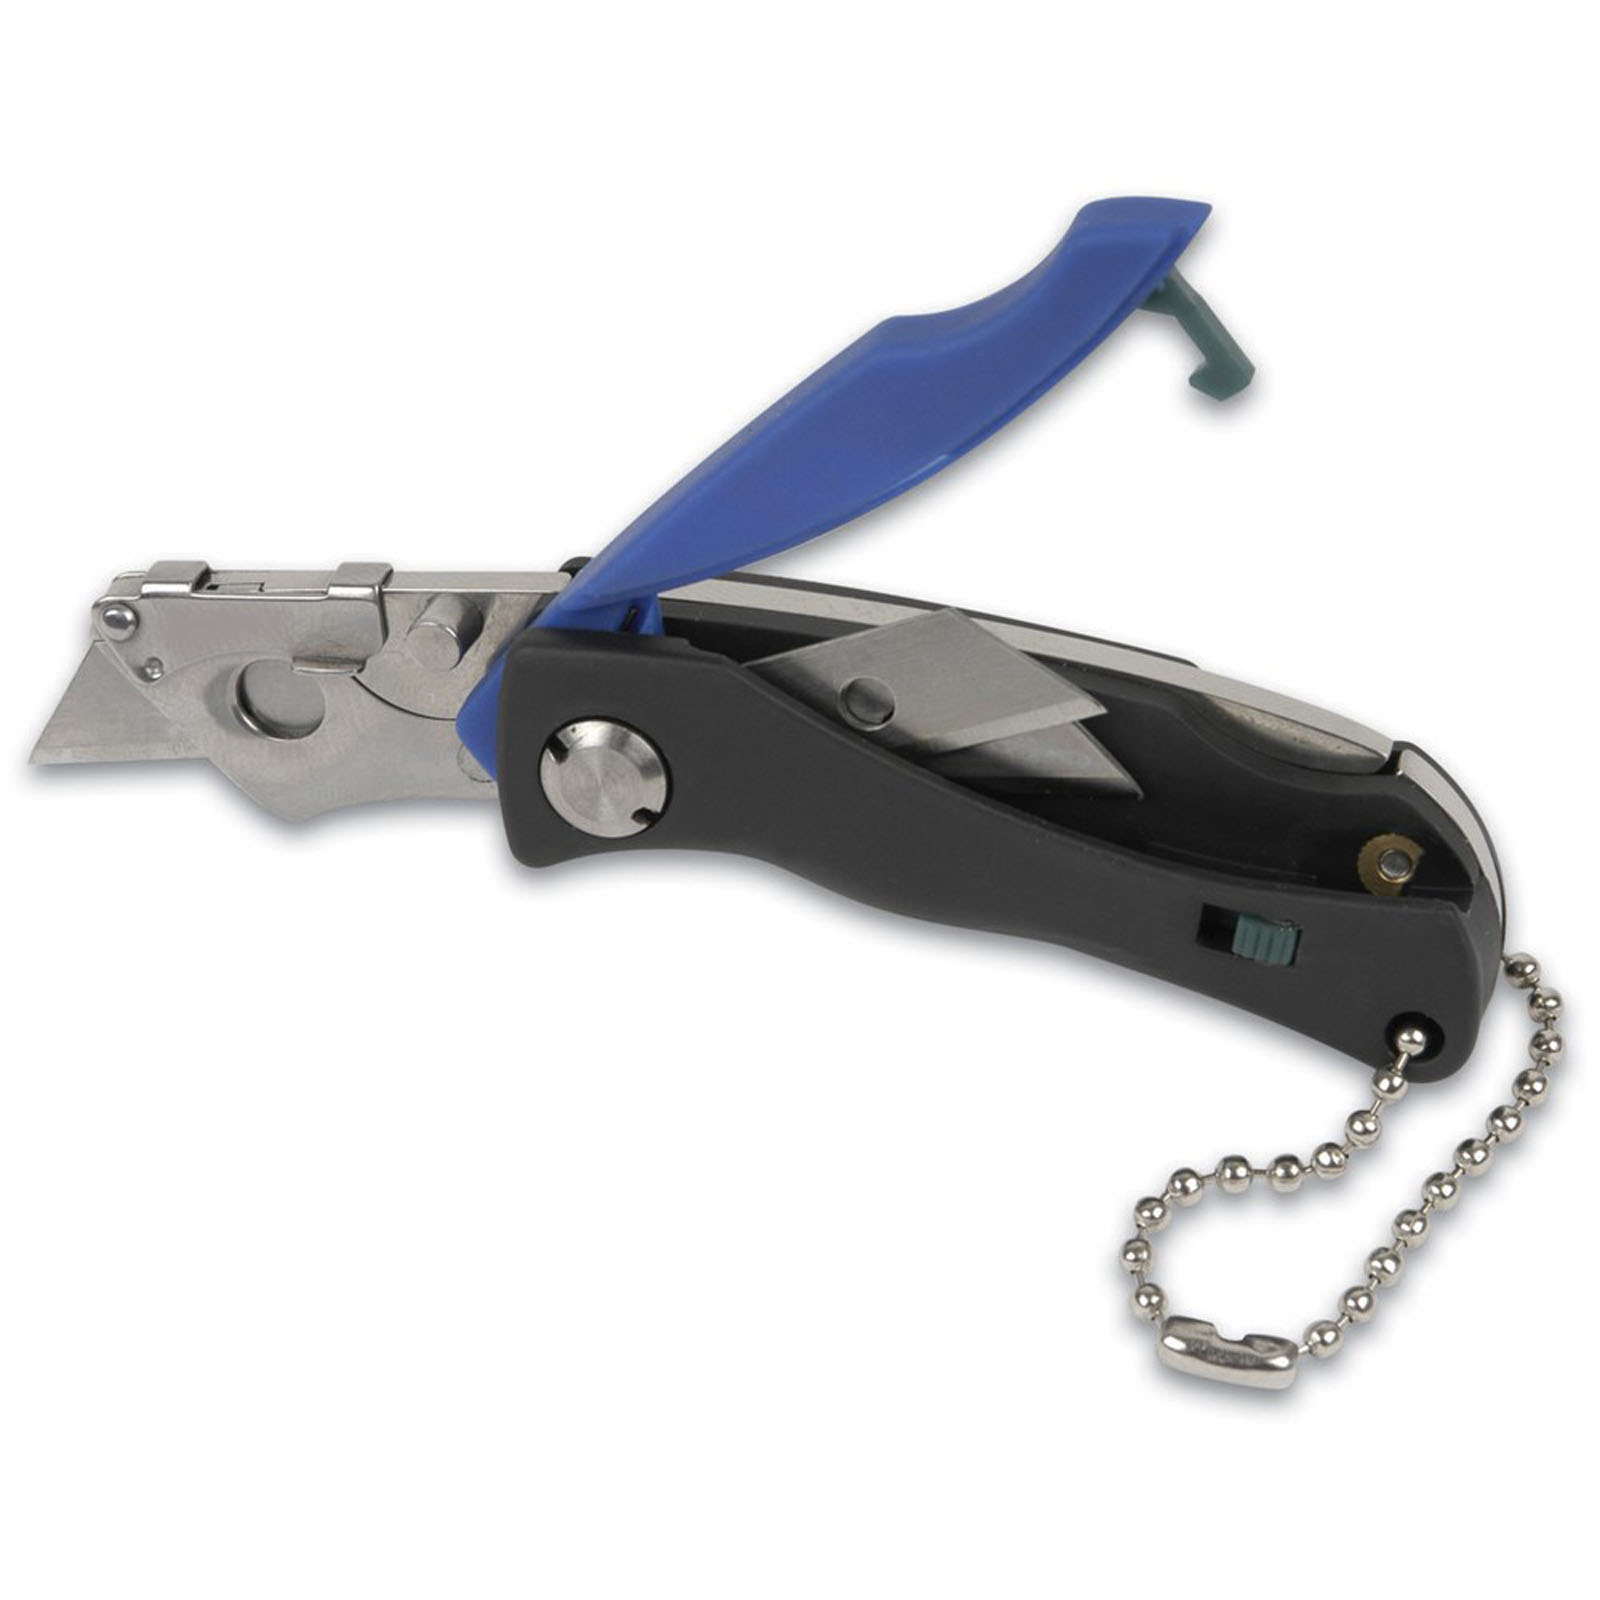 KINCROME 2 Piece Lock-Back Folding Utility Knife Set K060022